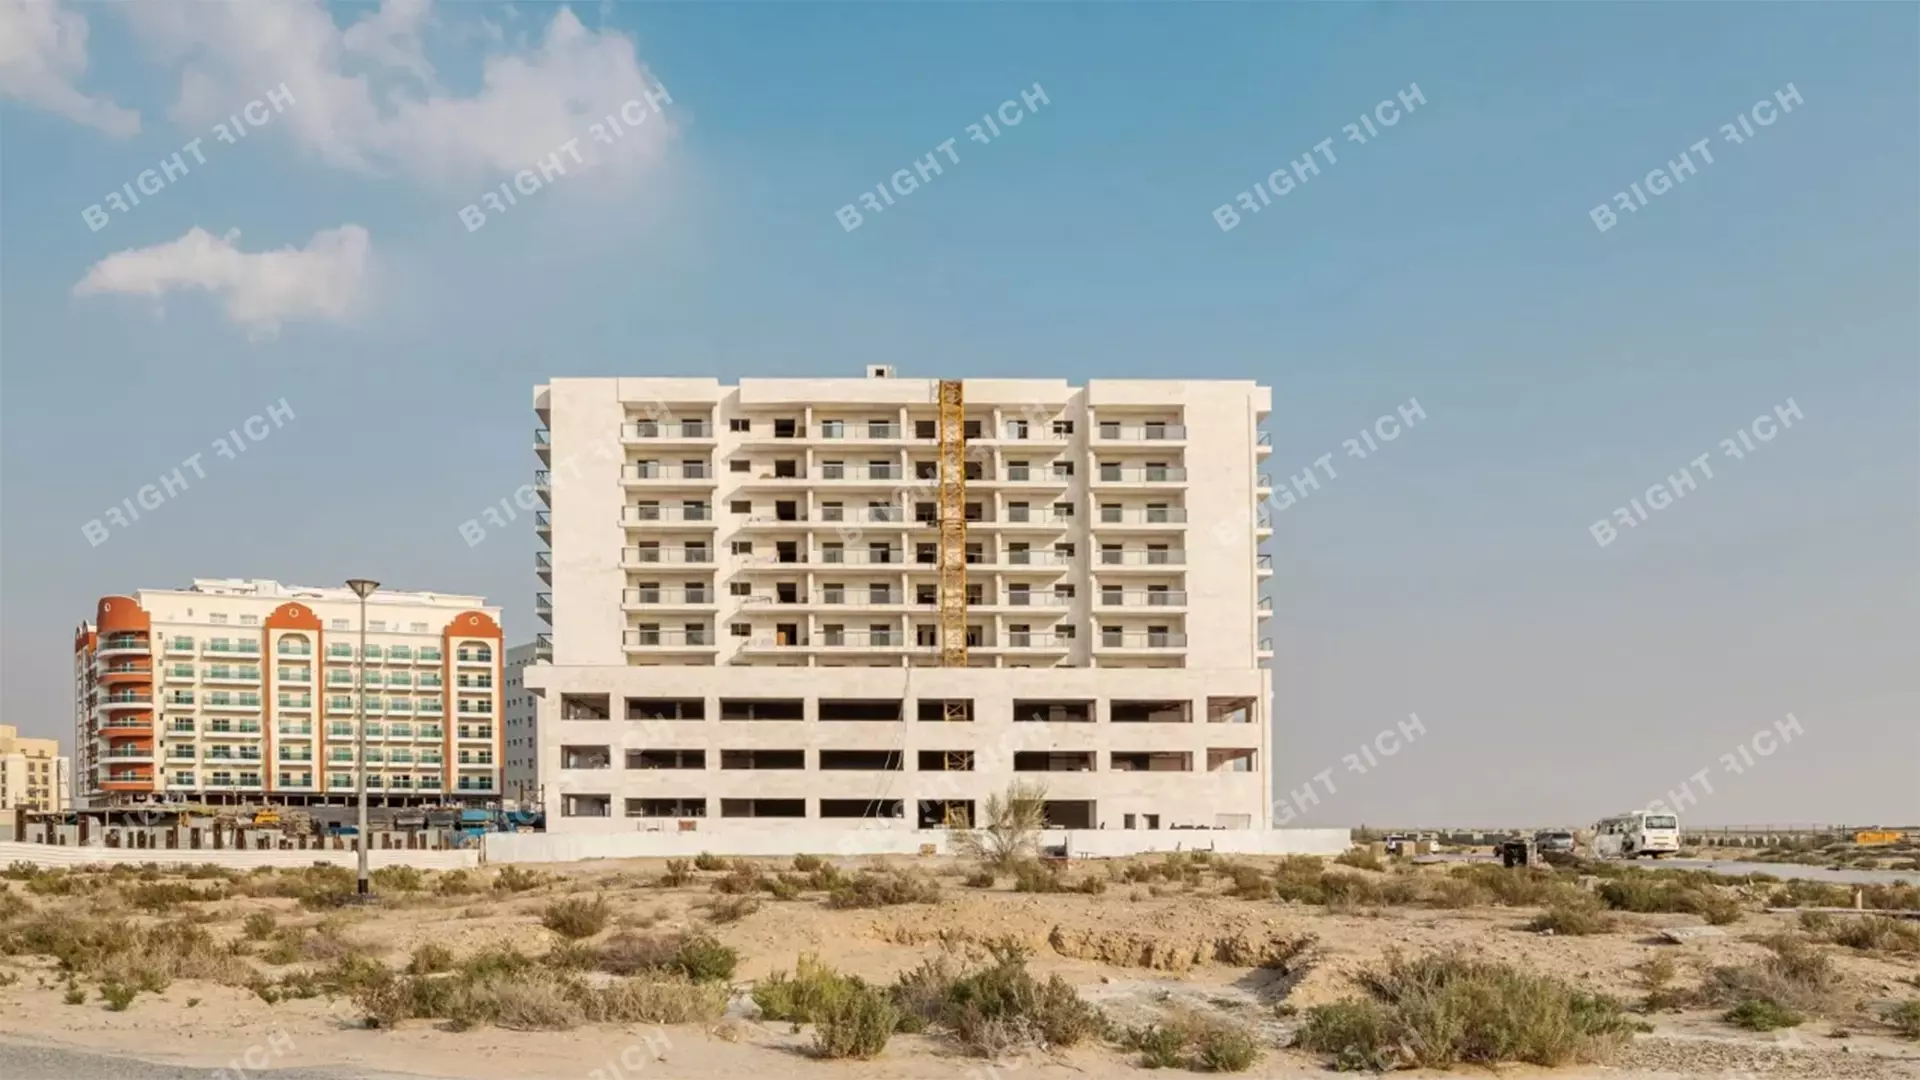 Equiti Apartments, apart complex in Dubai - 4